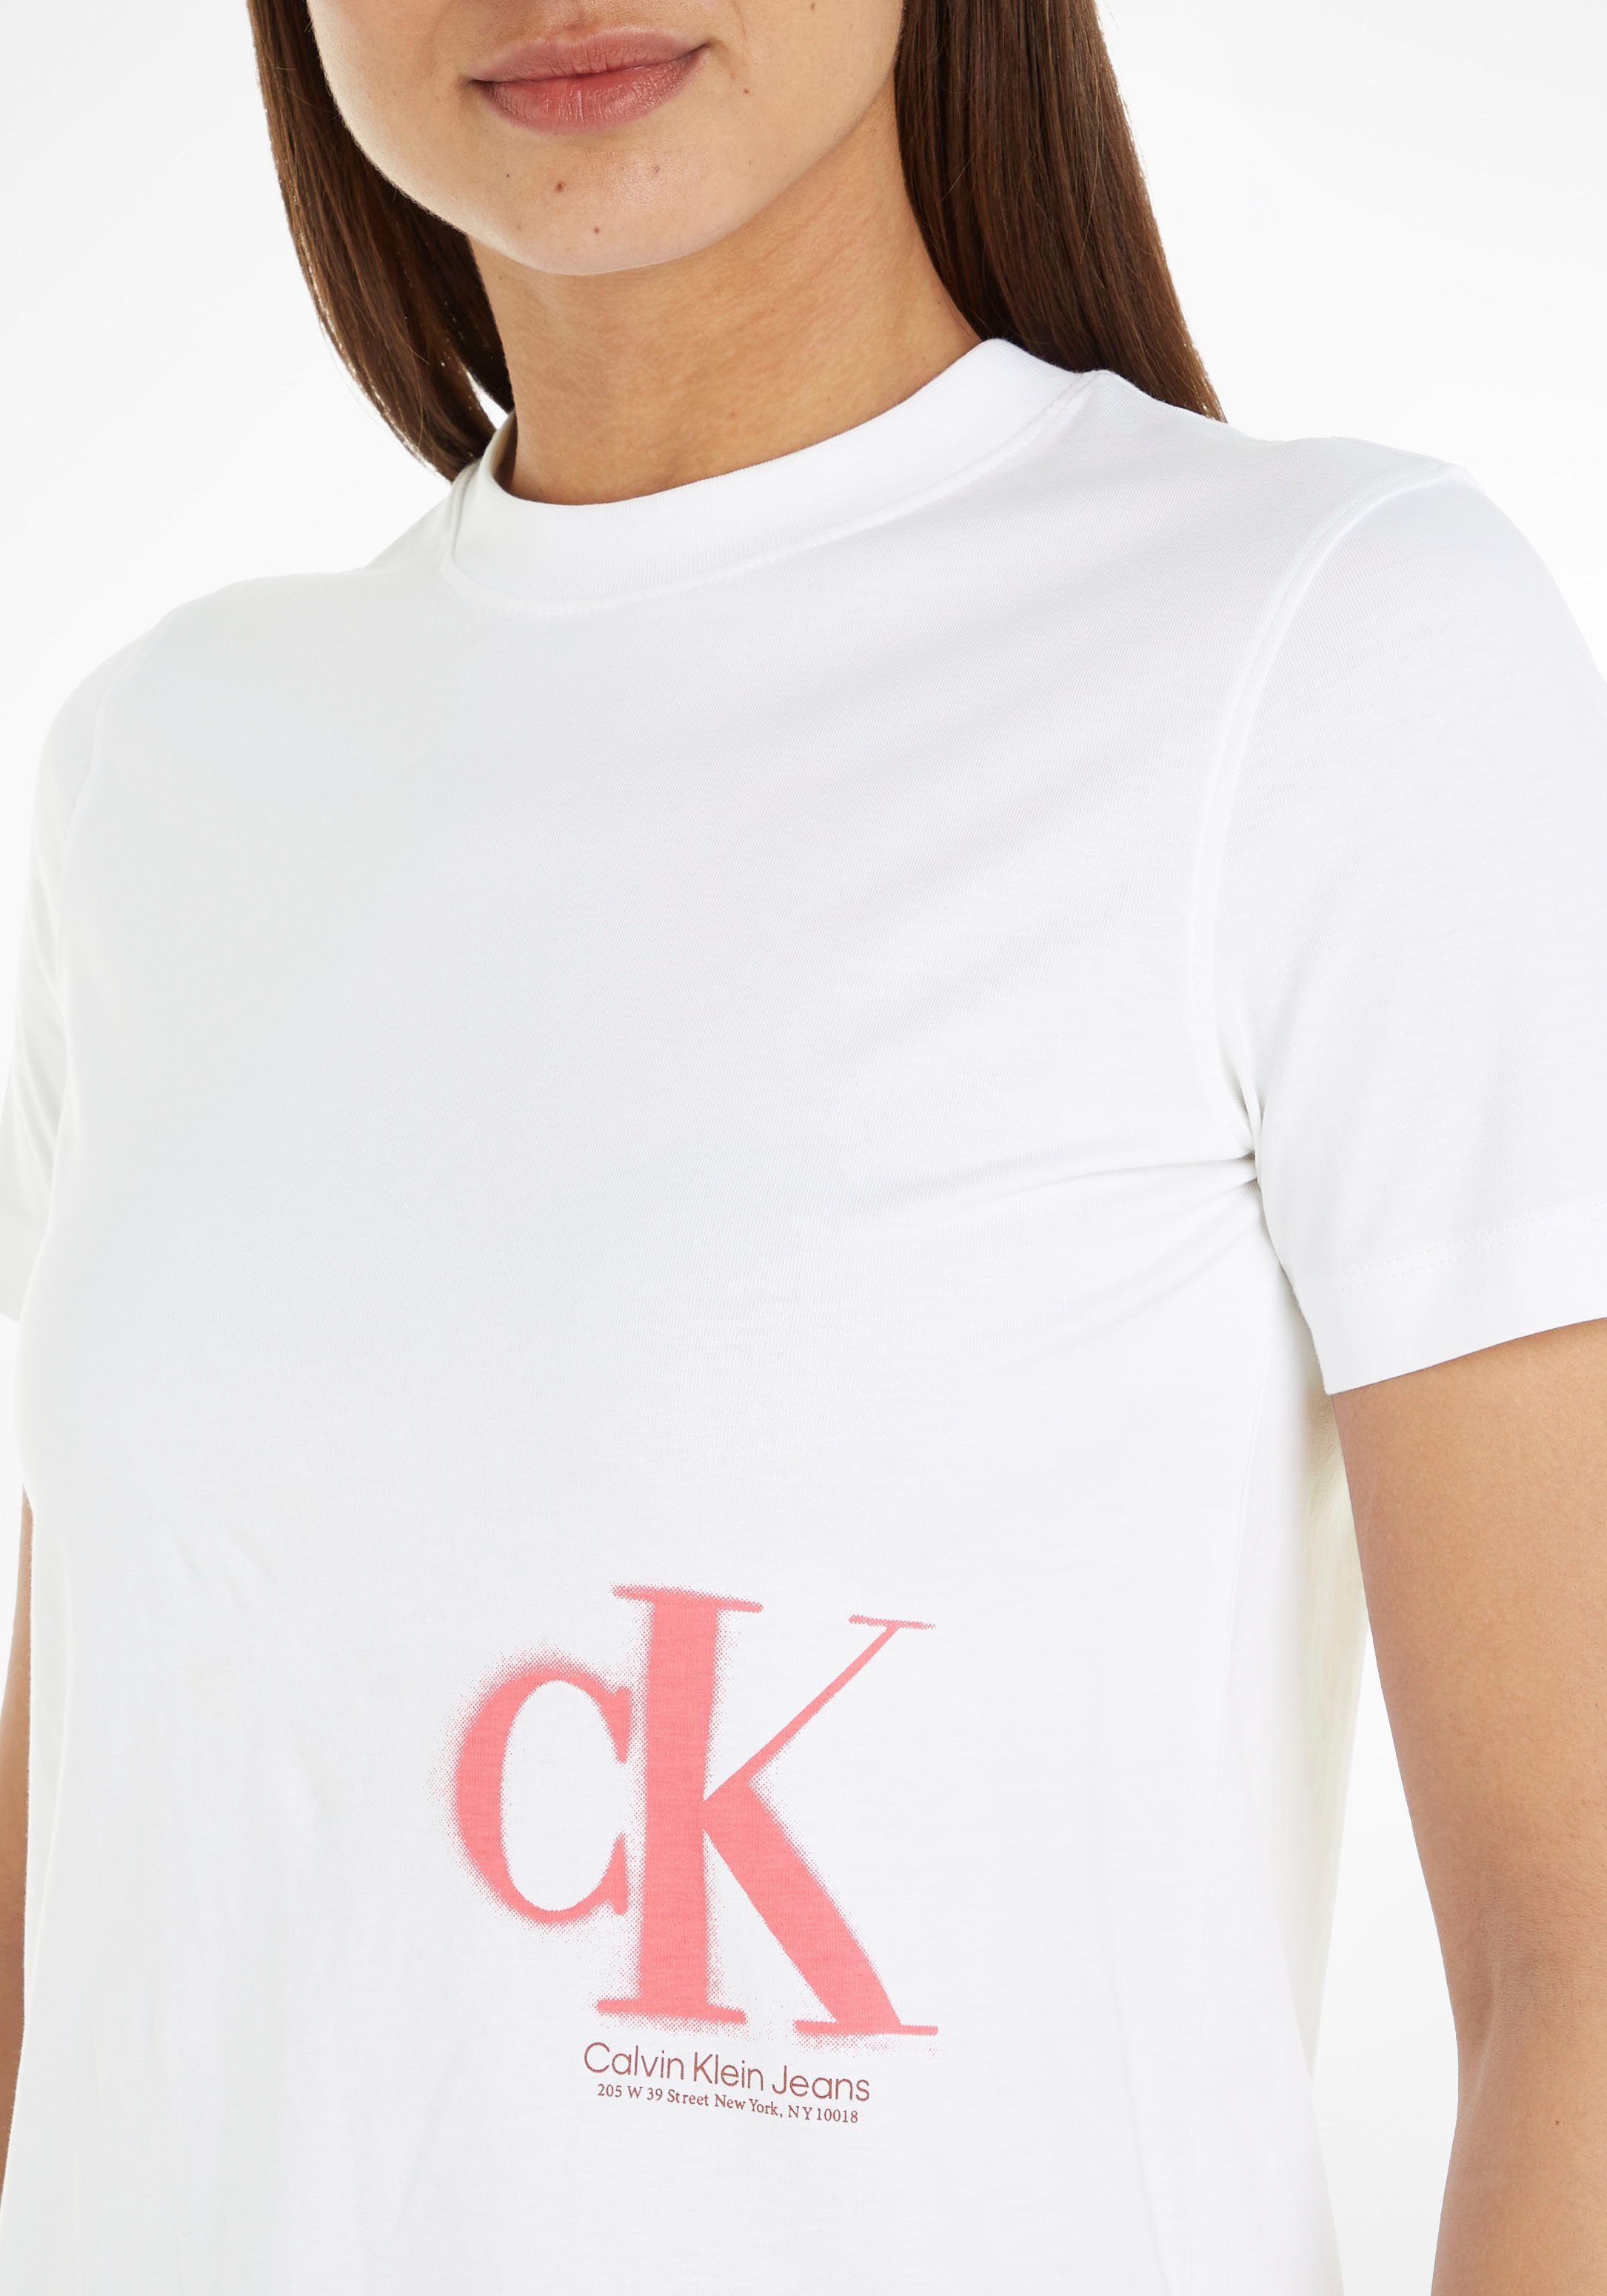 Jeans Calvin Klein im T-Shirt Logodruck Spray-Design mit